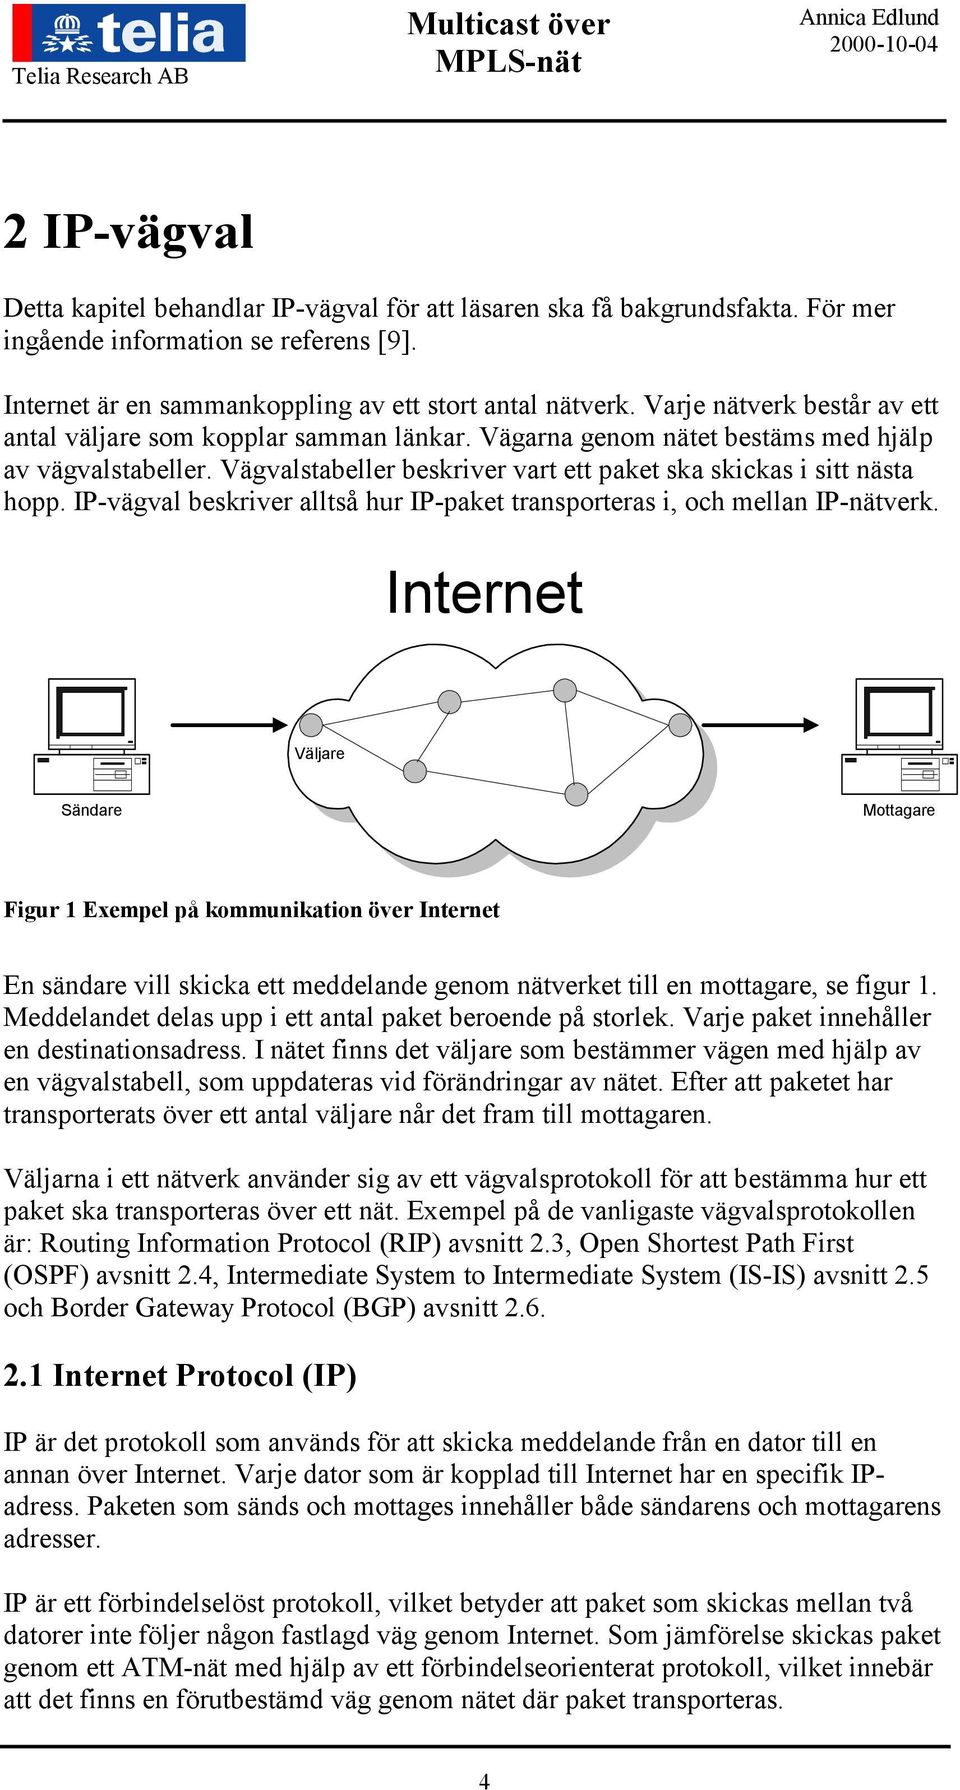 IP-vägval beskriver alltså hur IP-paket transporteras i, och mellan IP-nätverk.